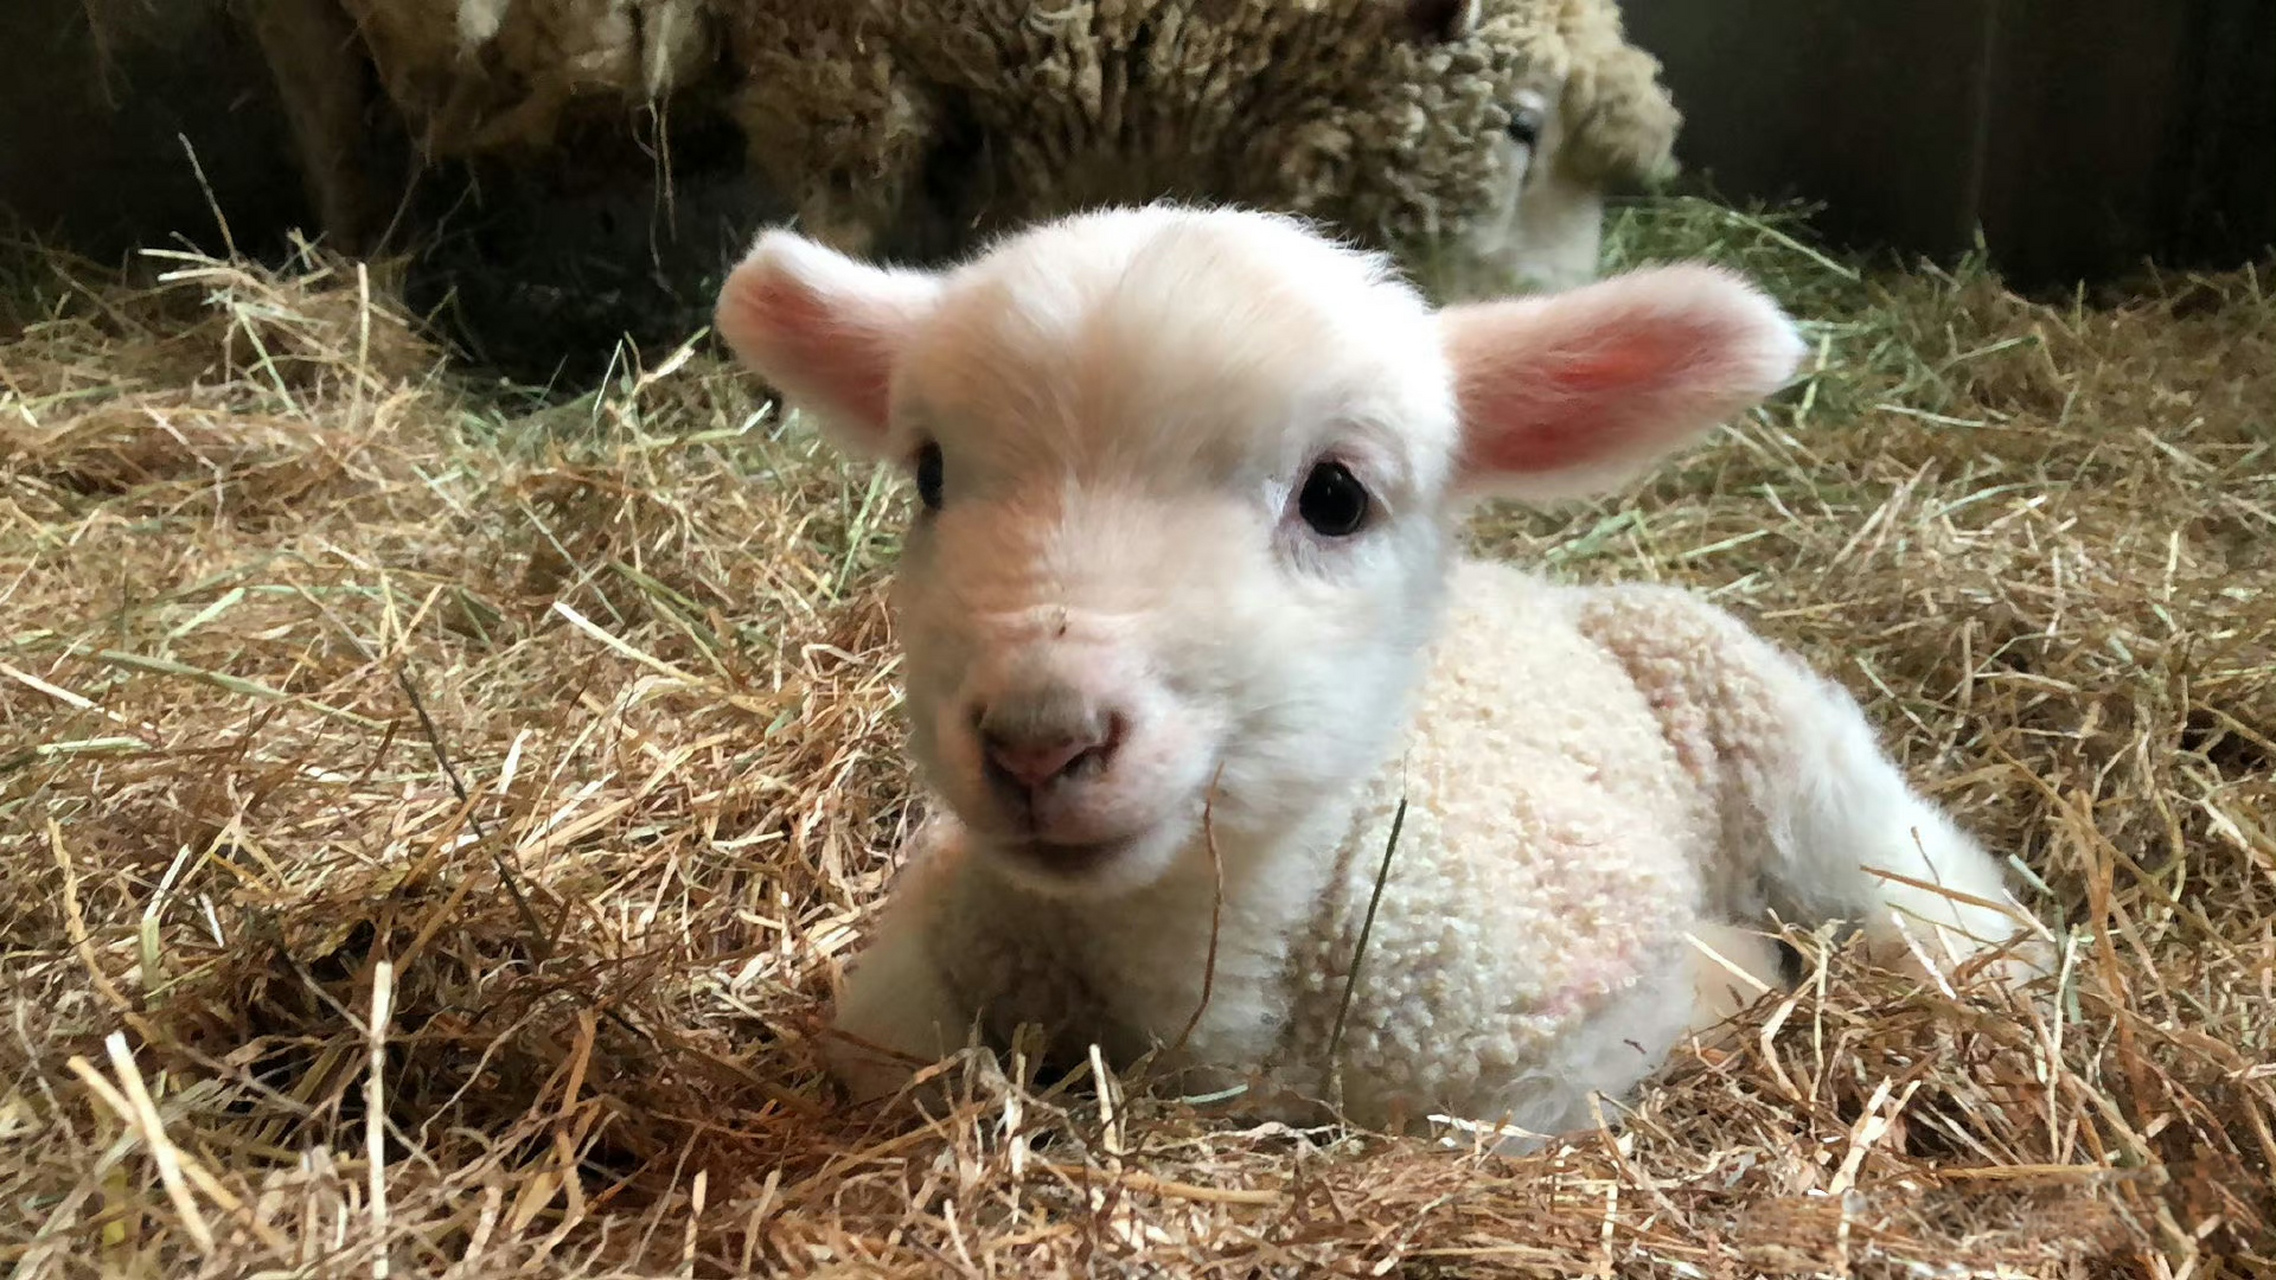 刚出生的小羊,像毛绒玩具一样,好可爱呀.